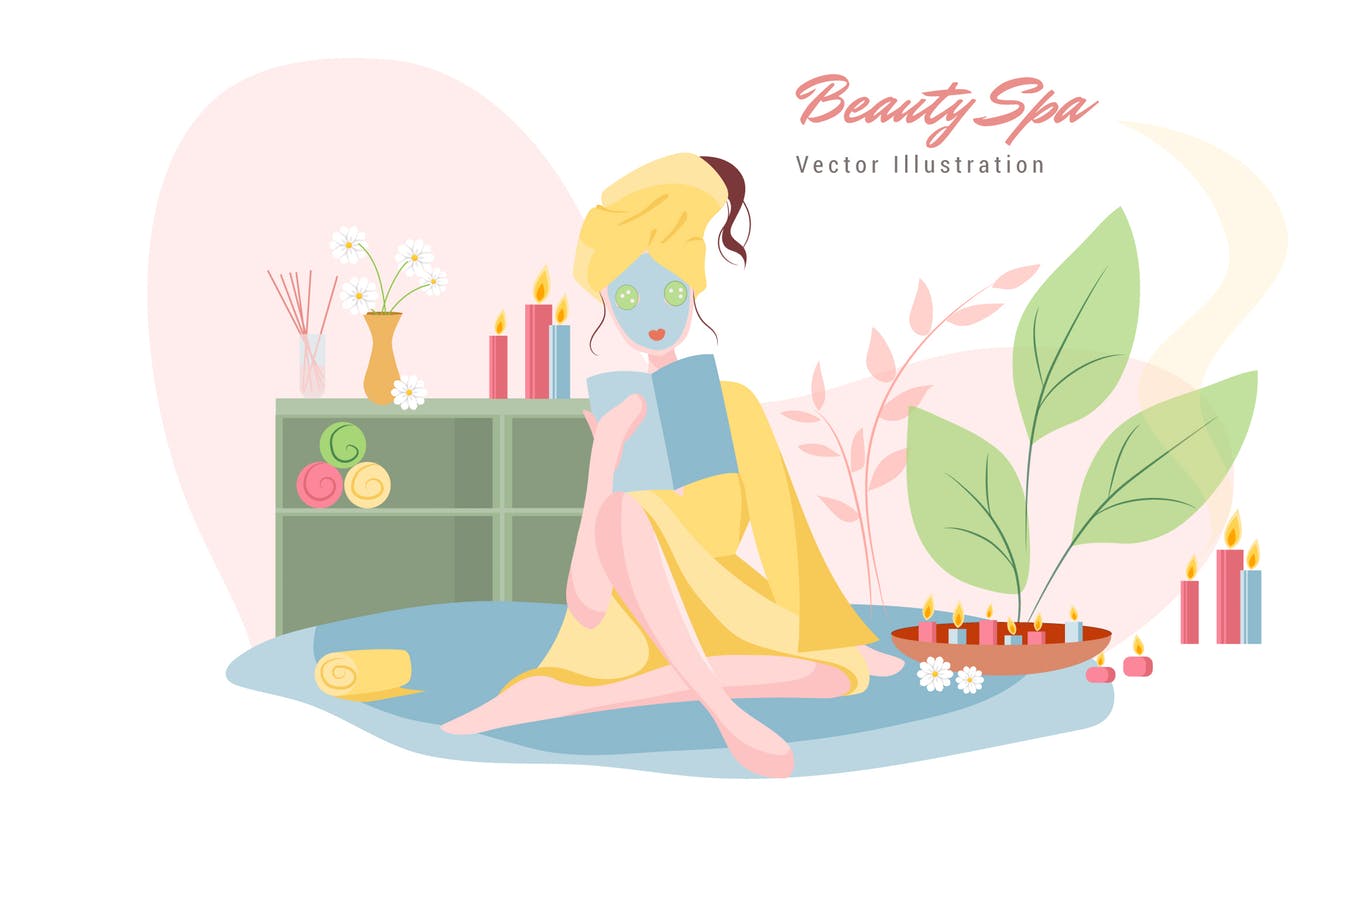 美容SPA主题矢量插画大洋岛精选设计素材v7 Beauty Spa Vector Illustration插图